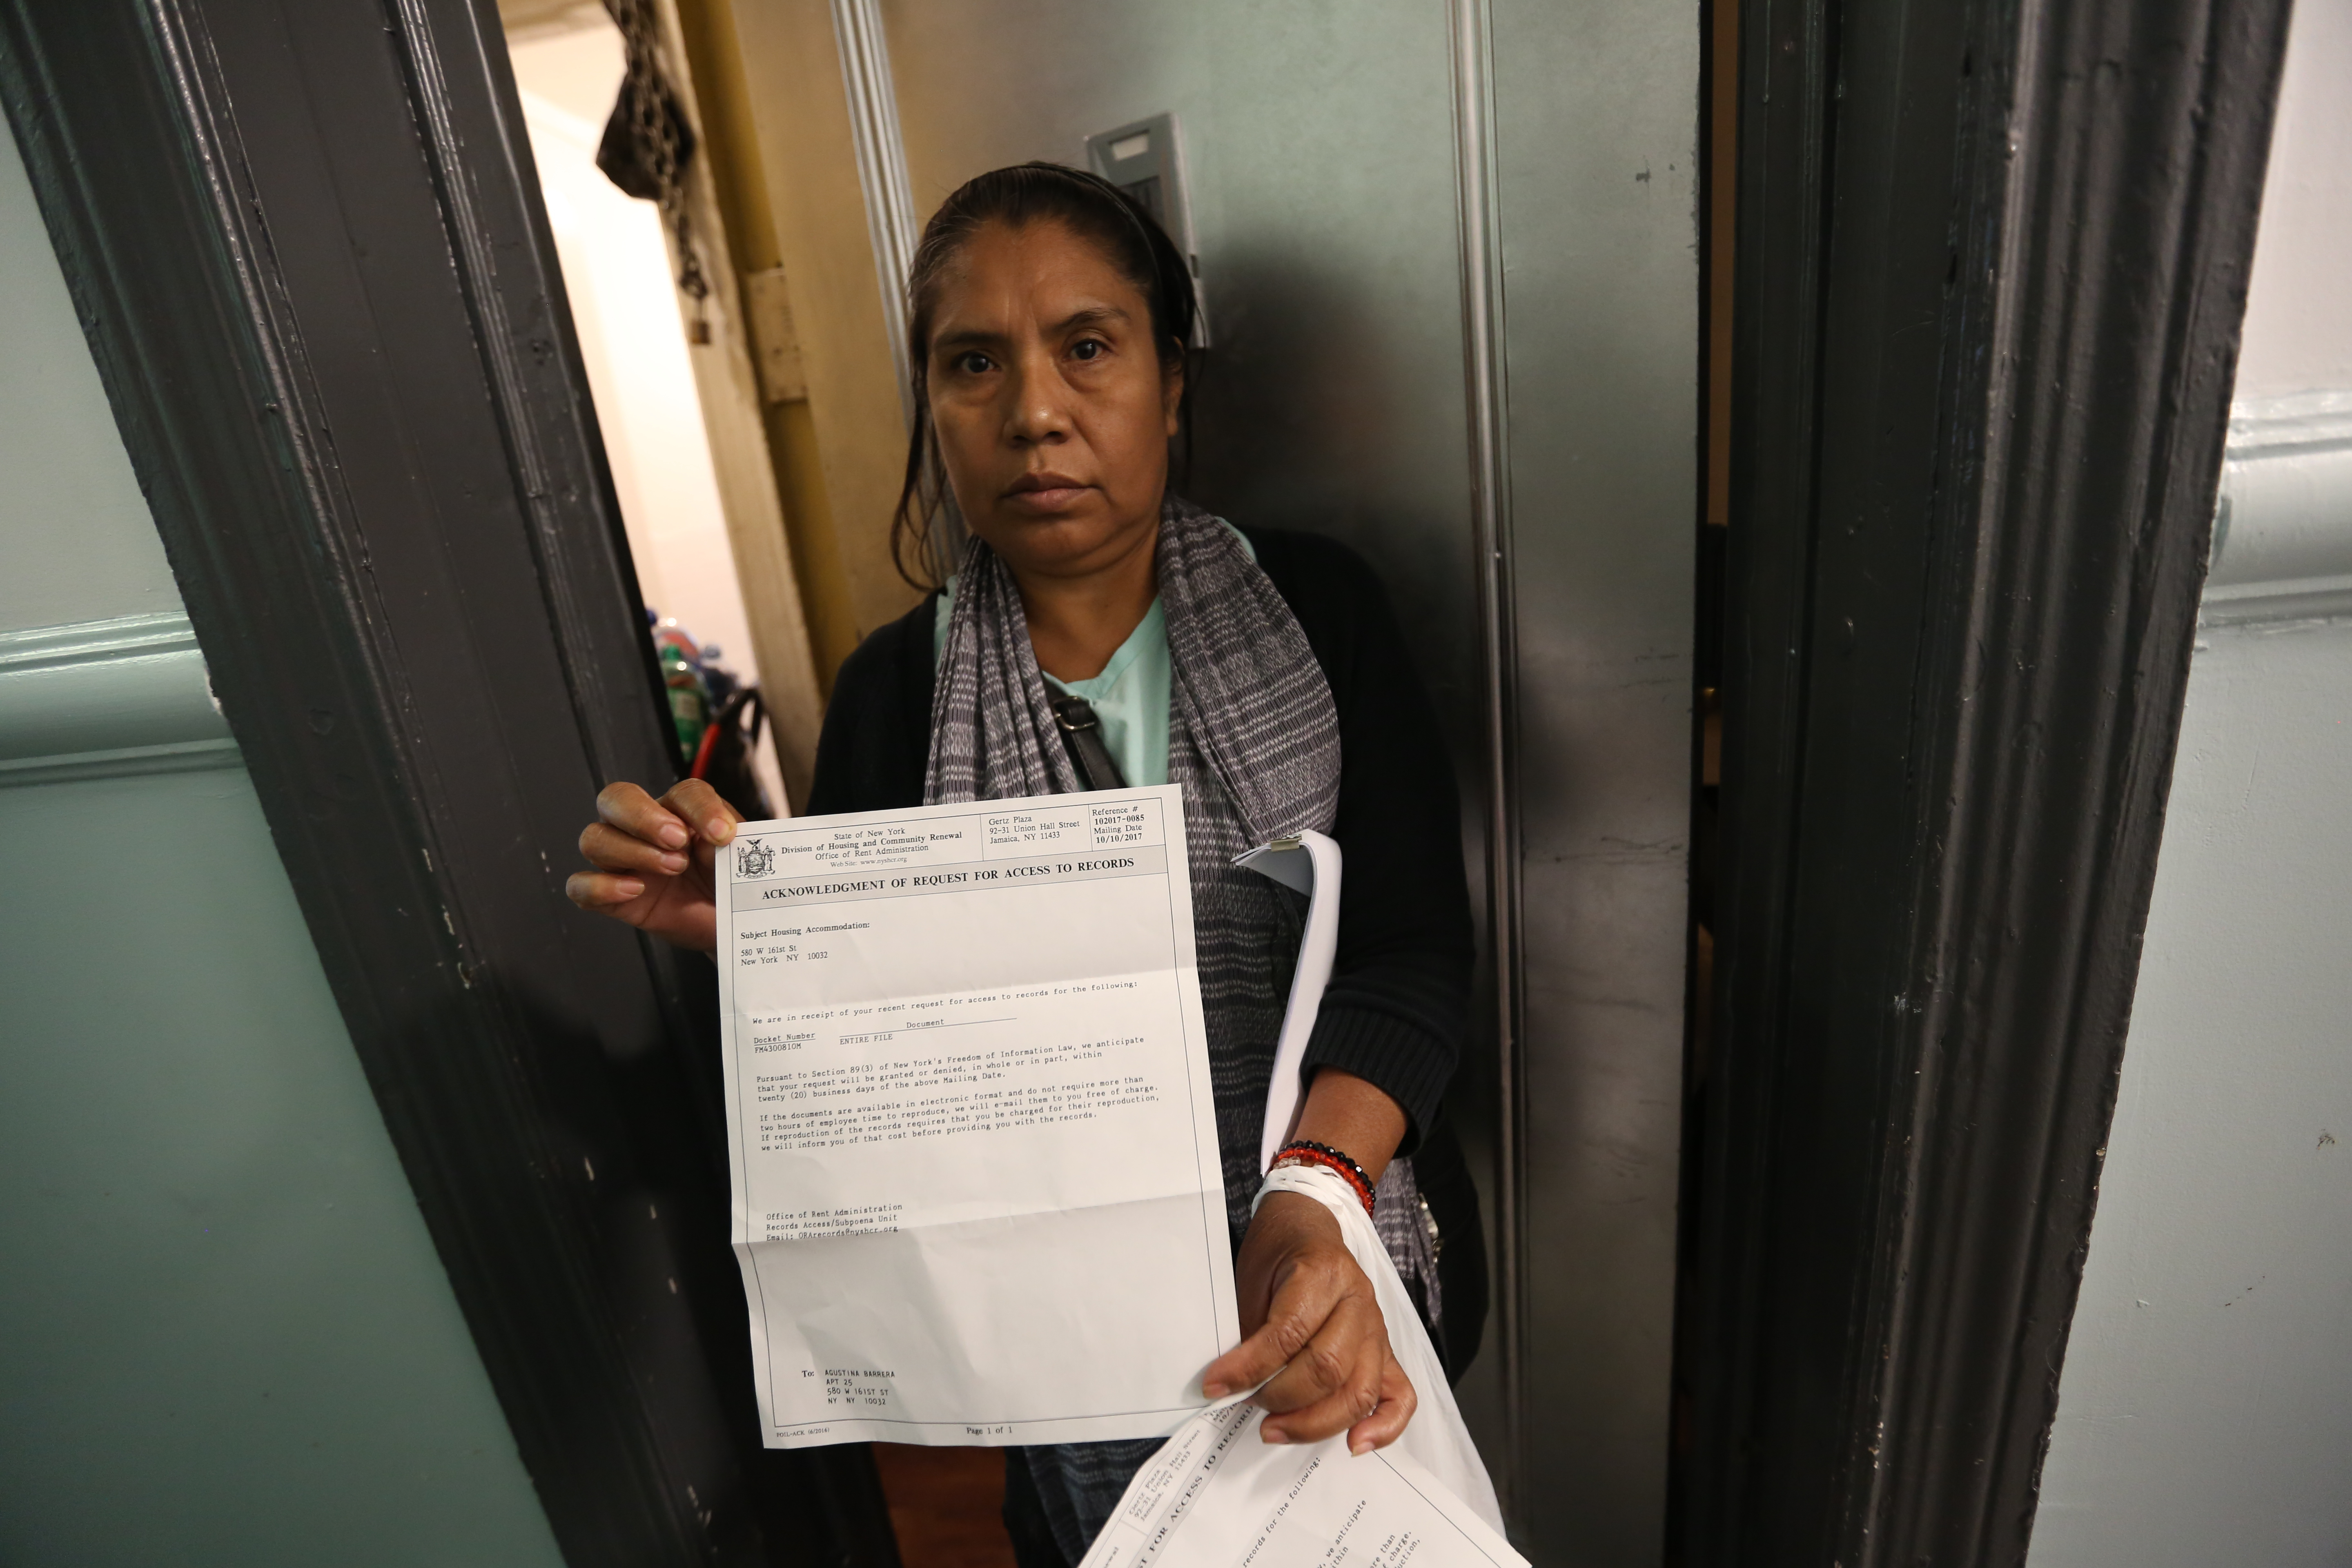 Agustina Barrera. Inquilinos denuncian terrribles condiciones de vivienda en la Calle Oeste 161 en Manhattan.